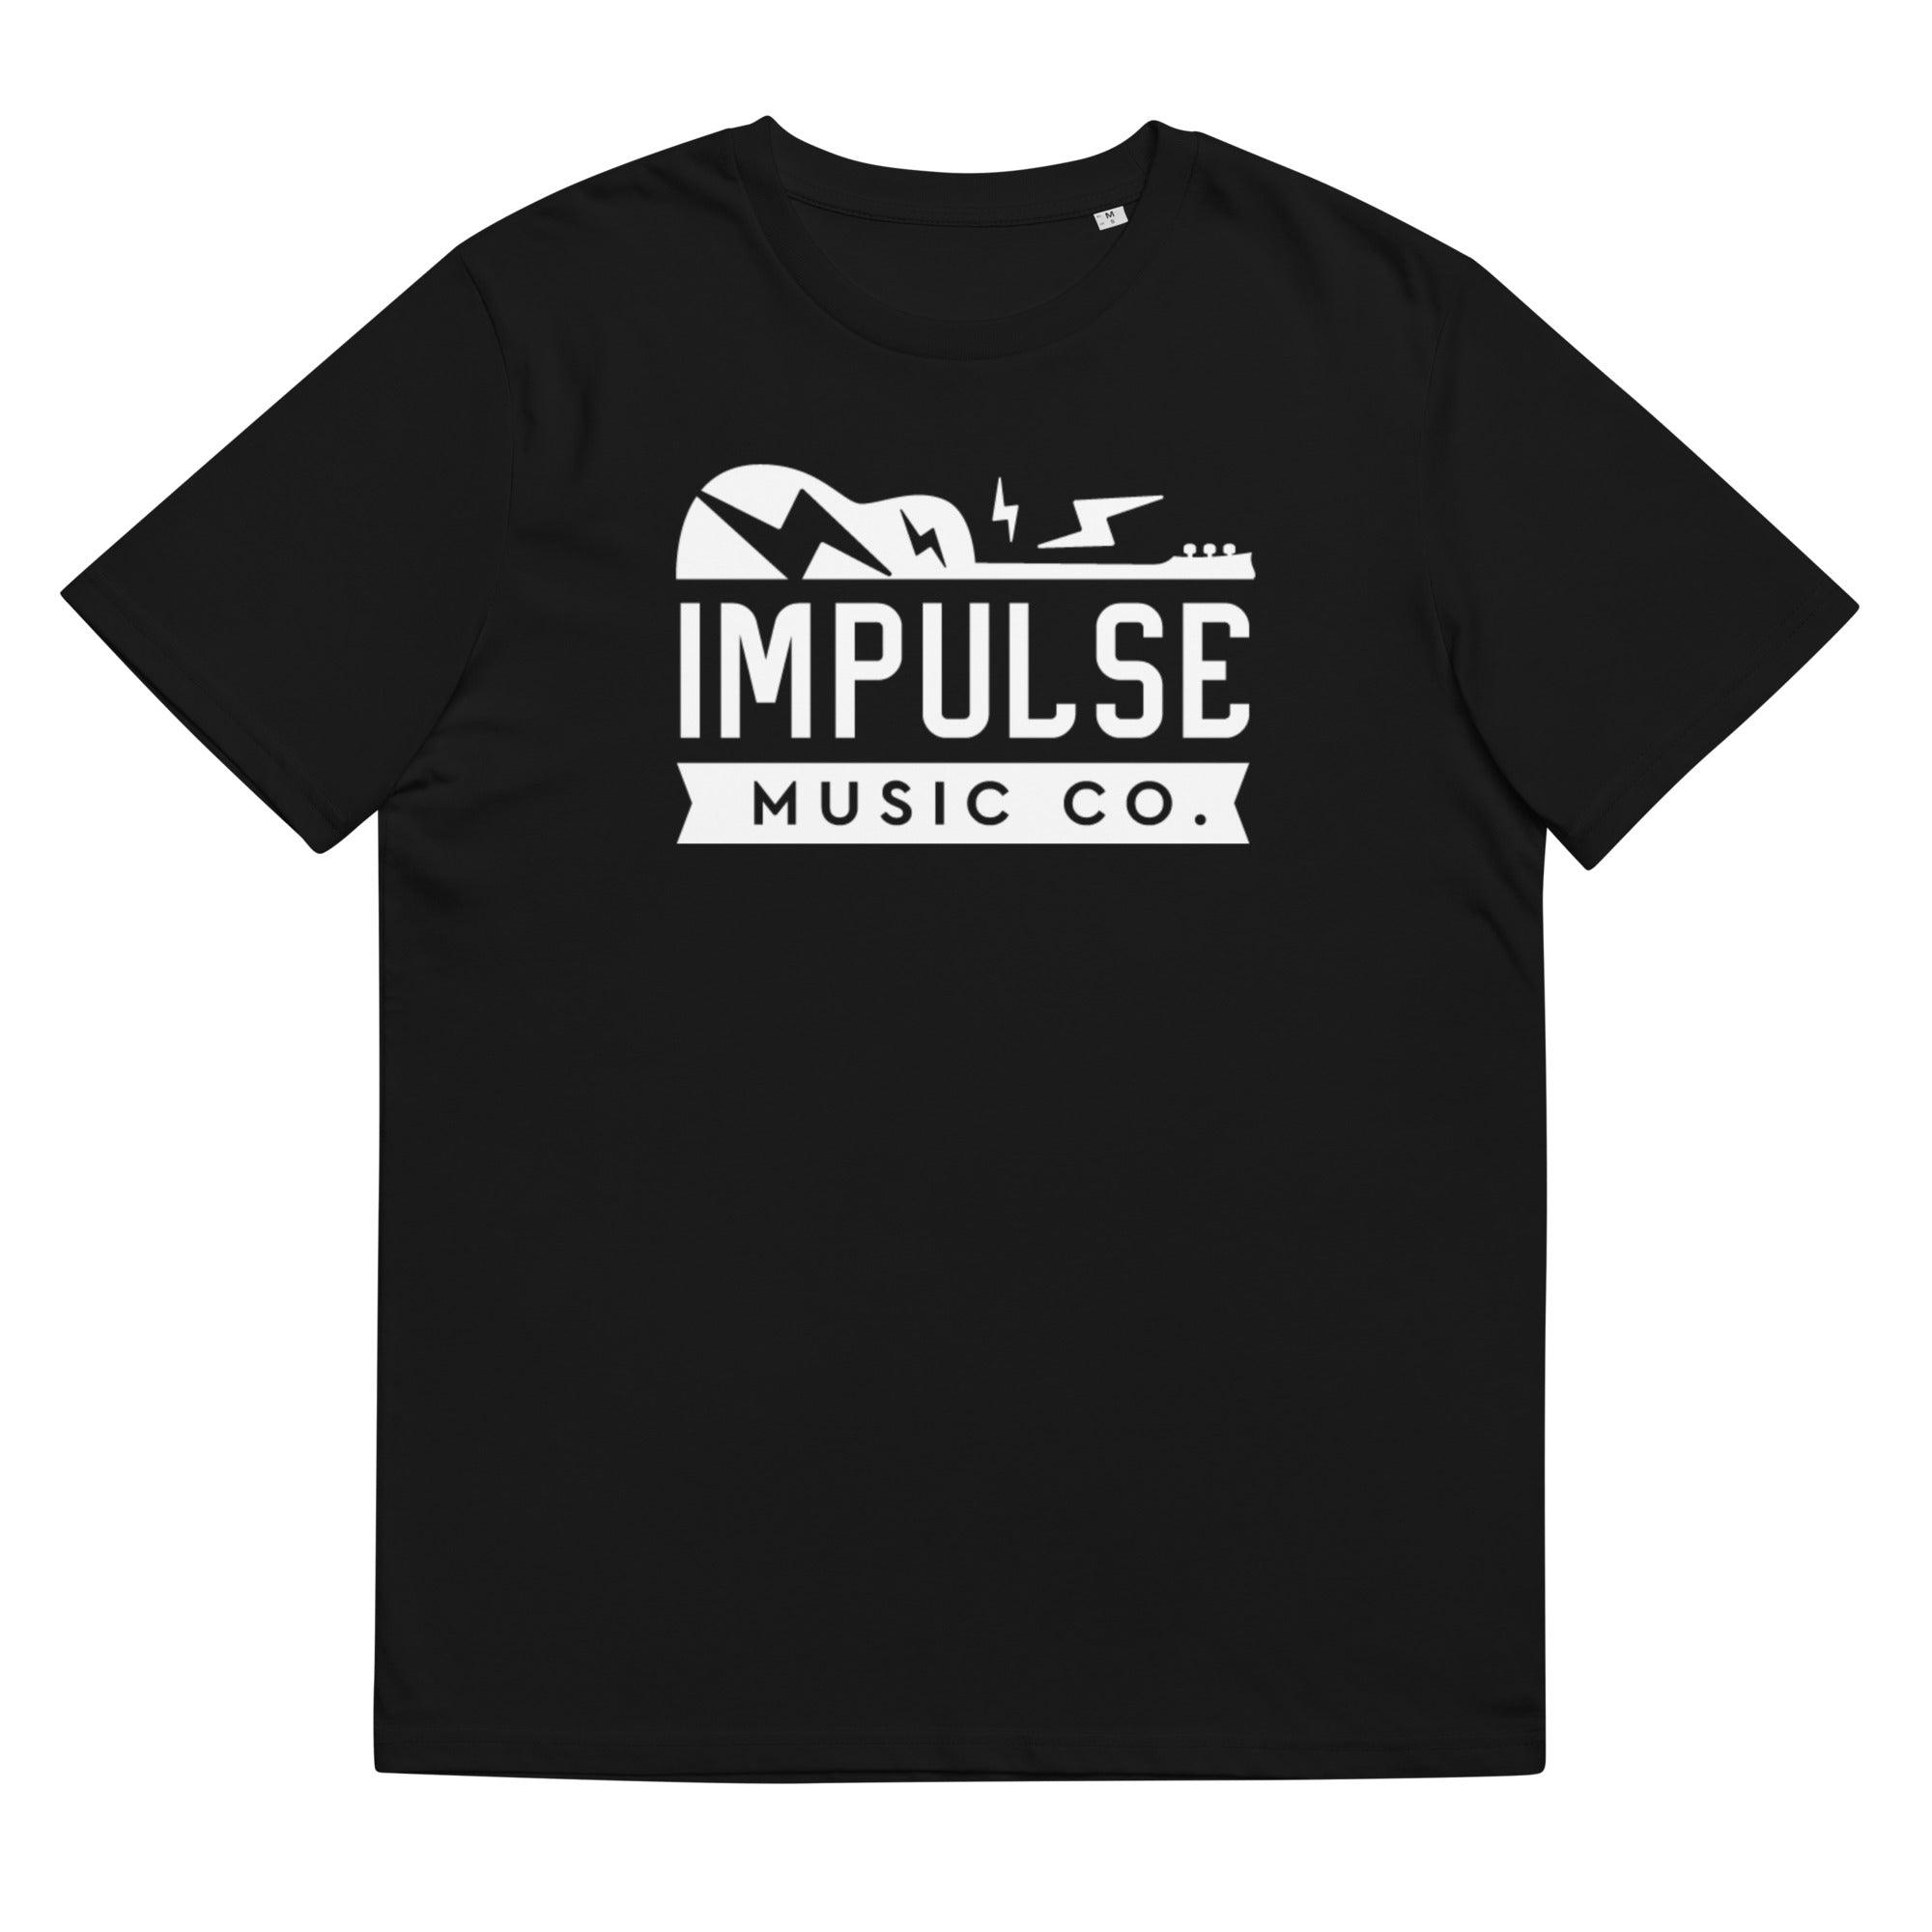 Impulse Music Co. Unisex T Shirt - Impulse Music Co.